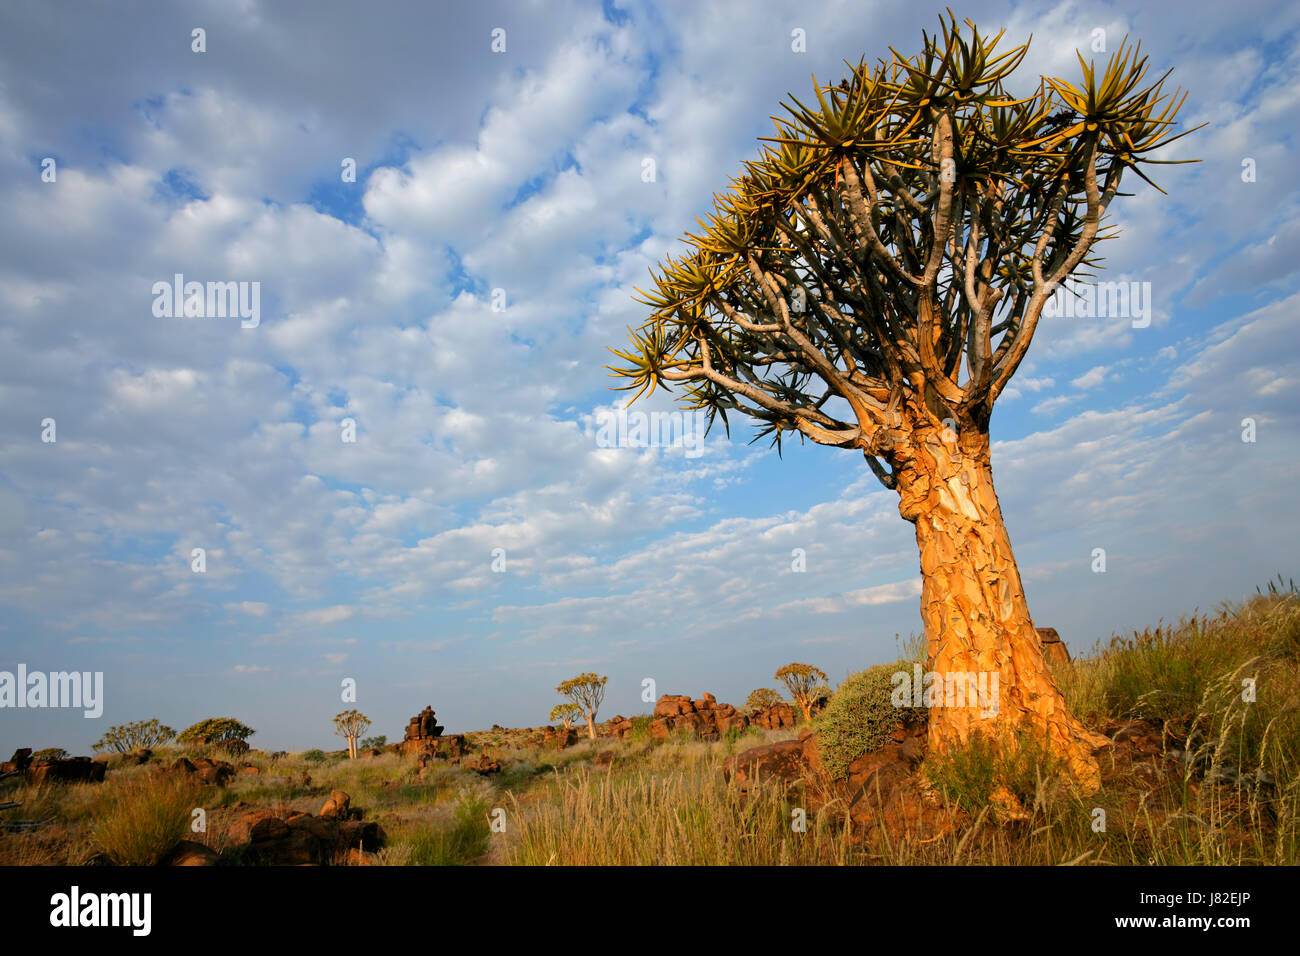 La Namibie arbre paysage nature paysage d'aloès campagne carquois nuages ciel Banque D'Images